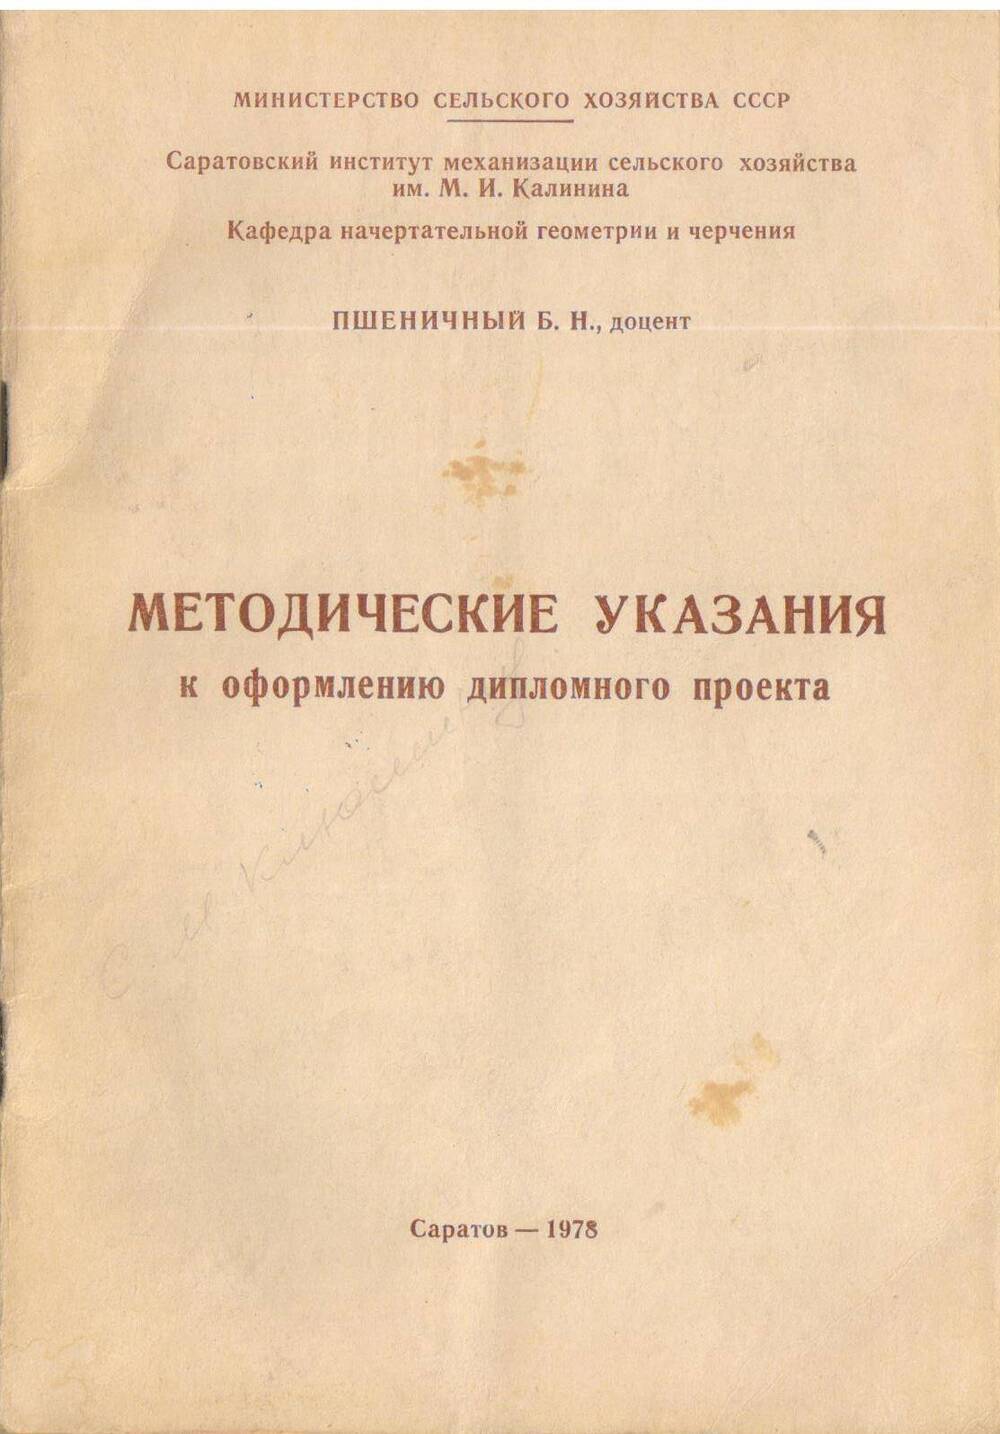 Пшеничный Б.М. Методические указания к оформлению дипломного проекта. 1978 год